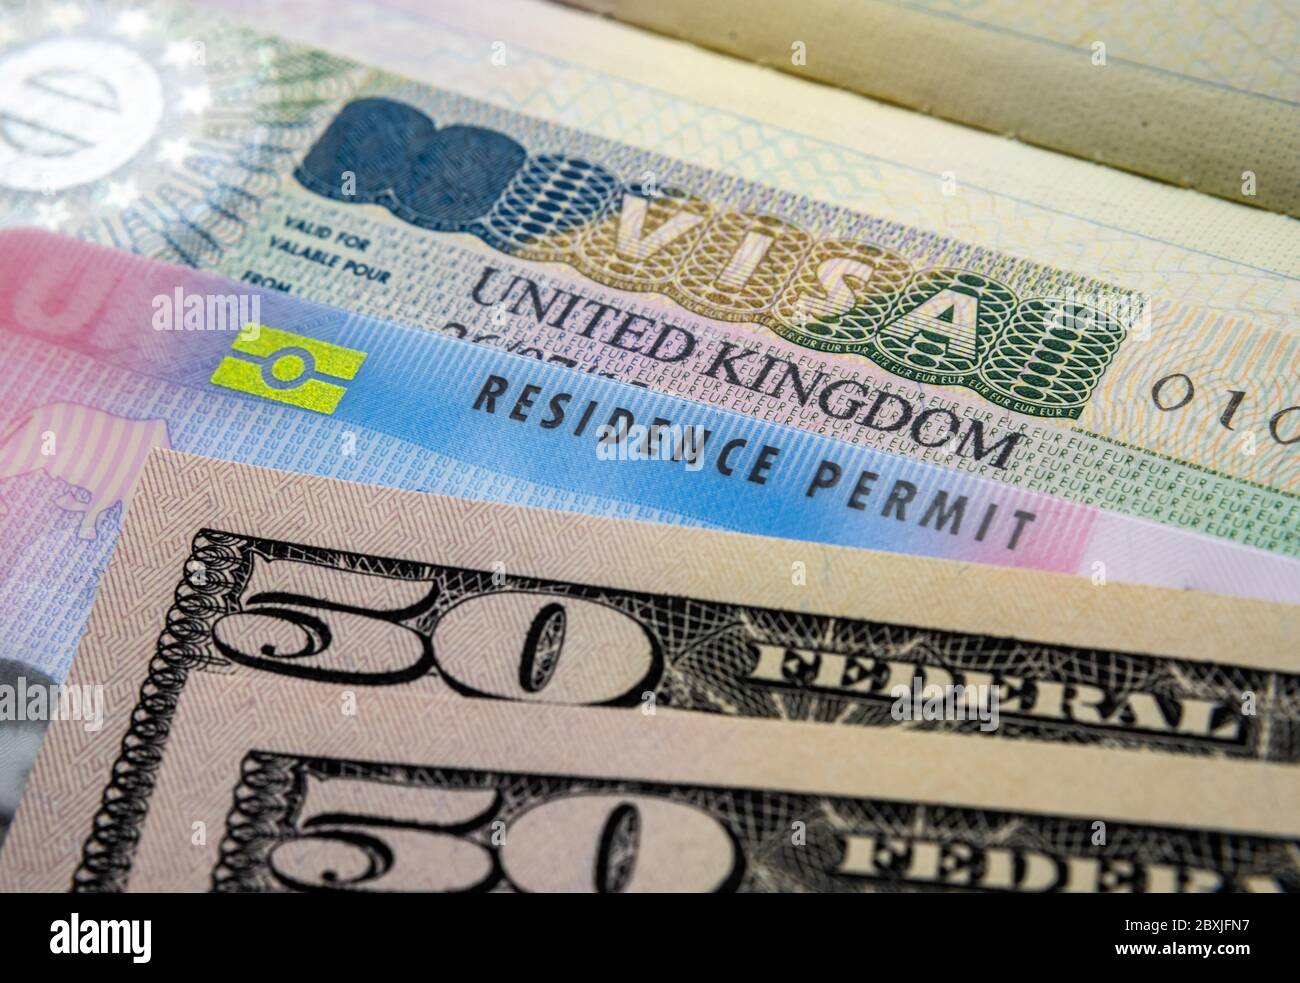 UK Einreise Business Visum im Reisepass, biometrische Aufenthaltserlaubnis Karte und Stapel von 50-Dollar-Banknoten. BRP-Karten für Tier 2 Arbeit Visum Einwanderer freigegeben Stockfoto